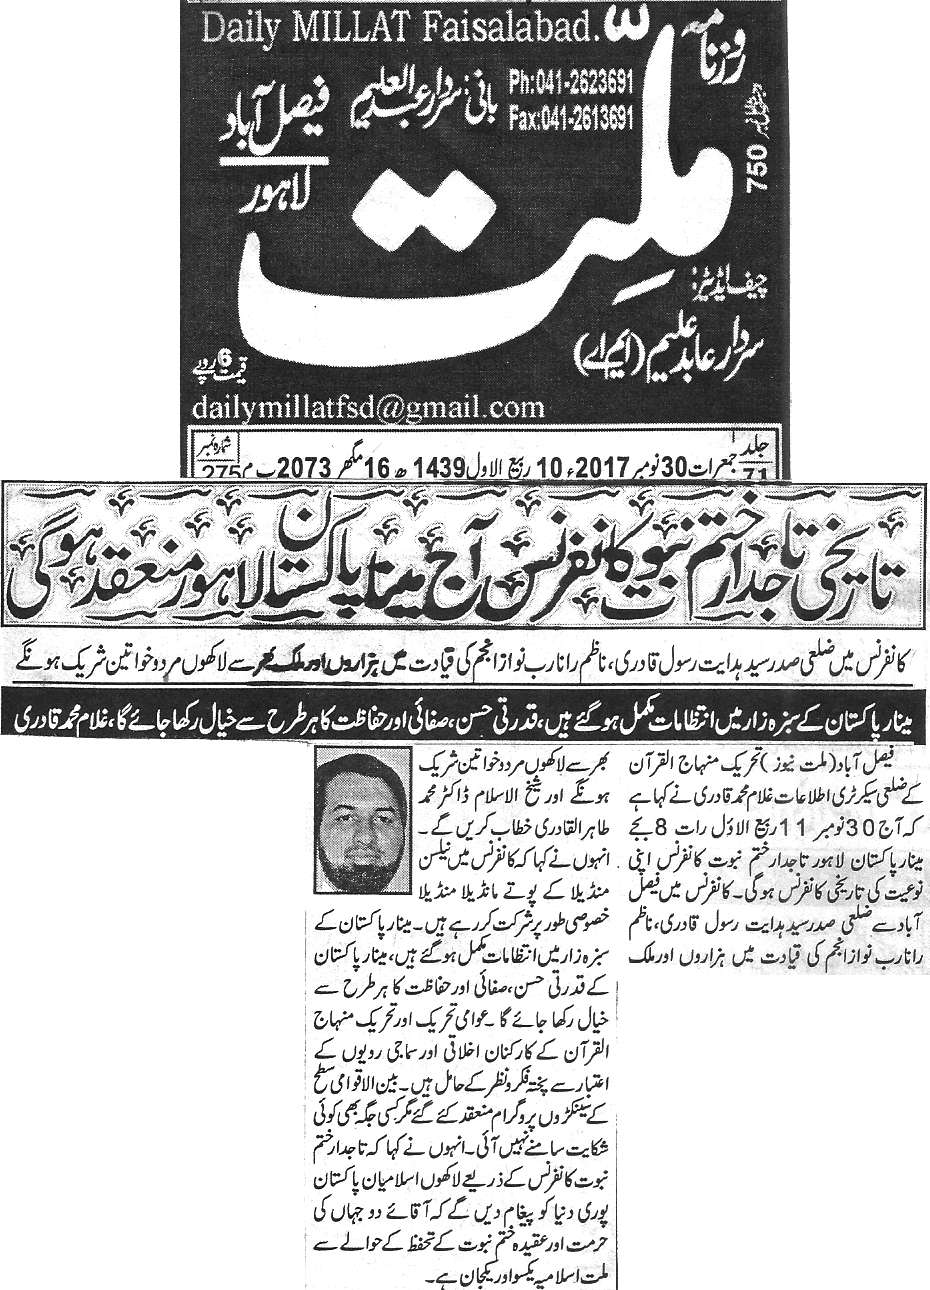 Minhaj-ul-Quran  Print Media Coverage Daily Millat page 2 